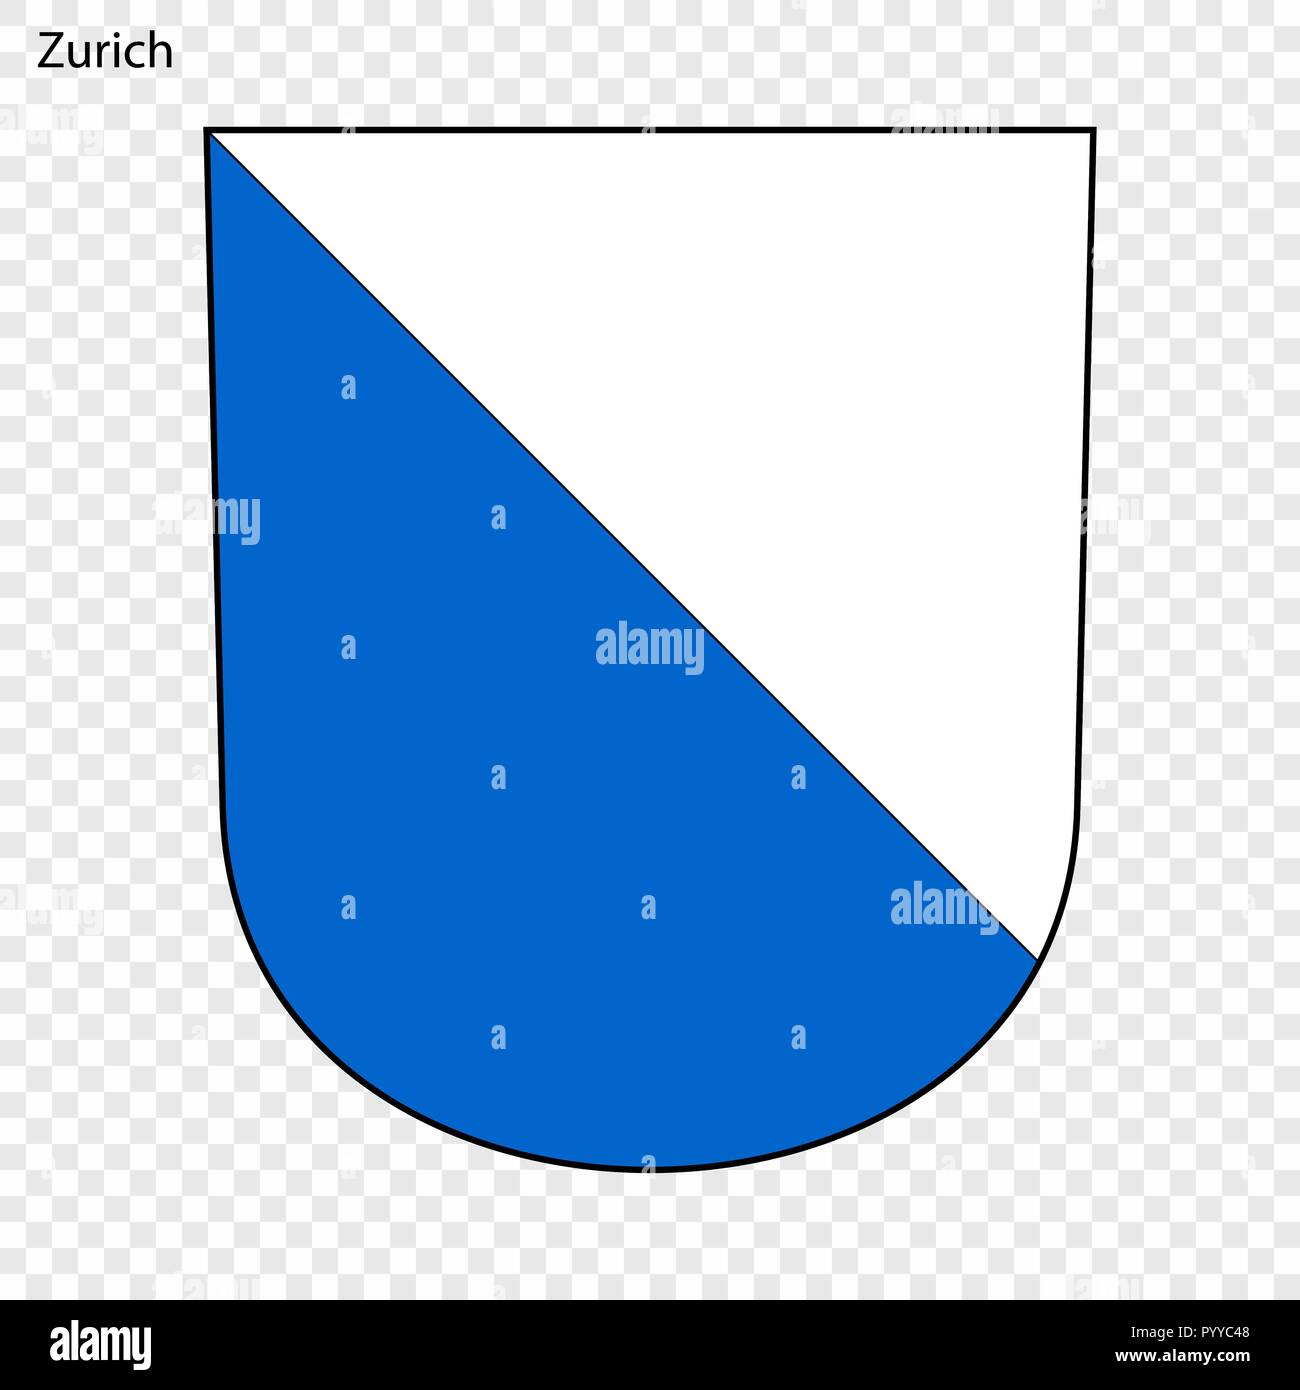 Emblem von Zürich. Stadt der Schweiz. Vector Illustration  Stock-Vektorgrafik - Alamy